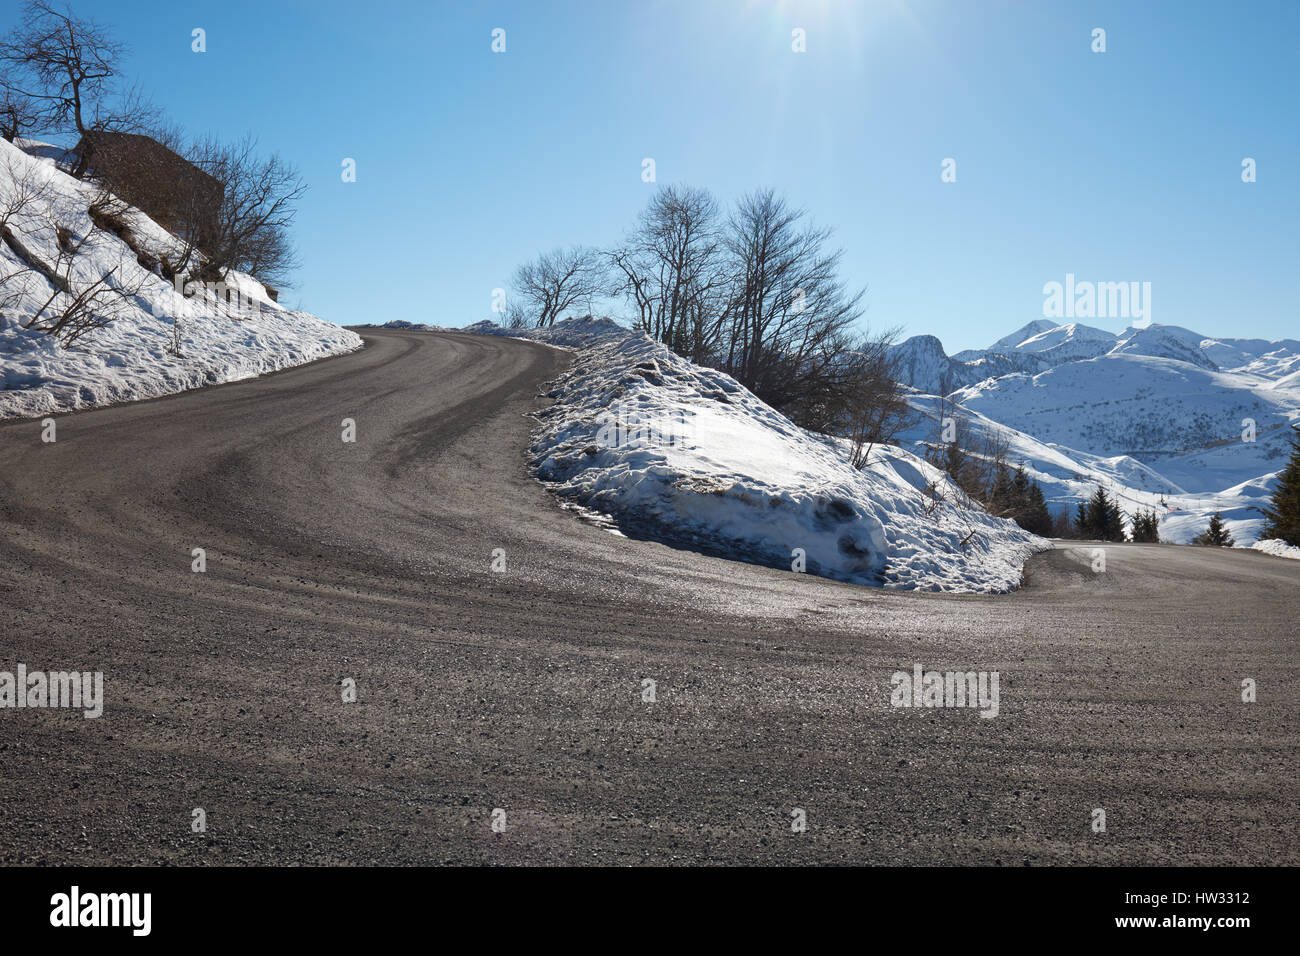 Route de montagne vide lors d'une courbe avec l'hiver neigeux, ciel bleu dans une journée ensoleillée Banque D'Images